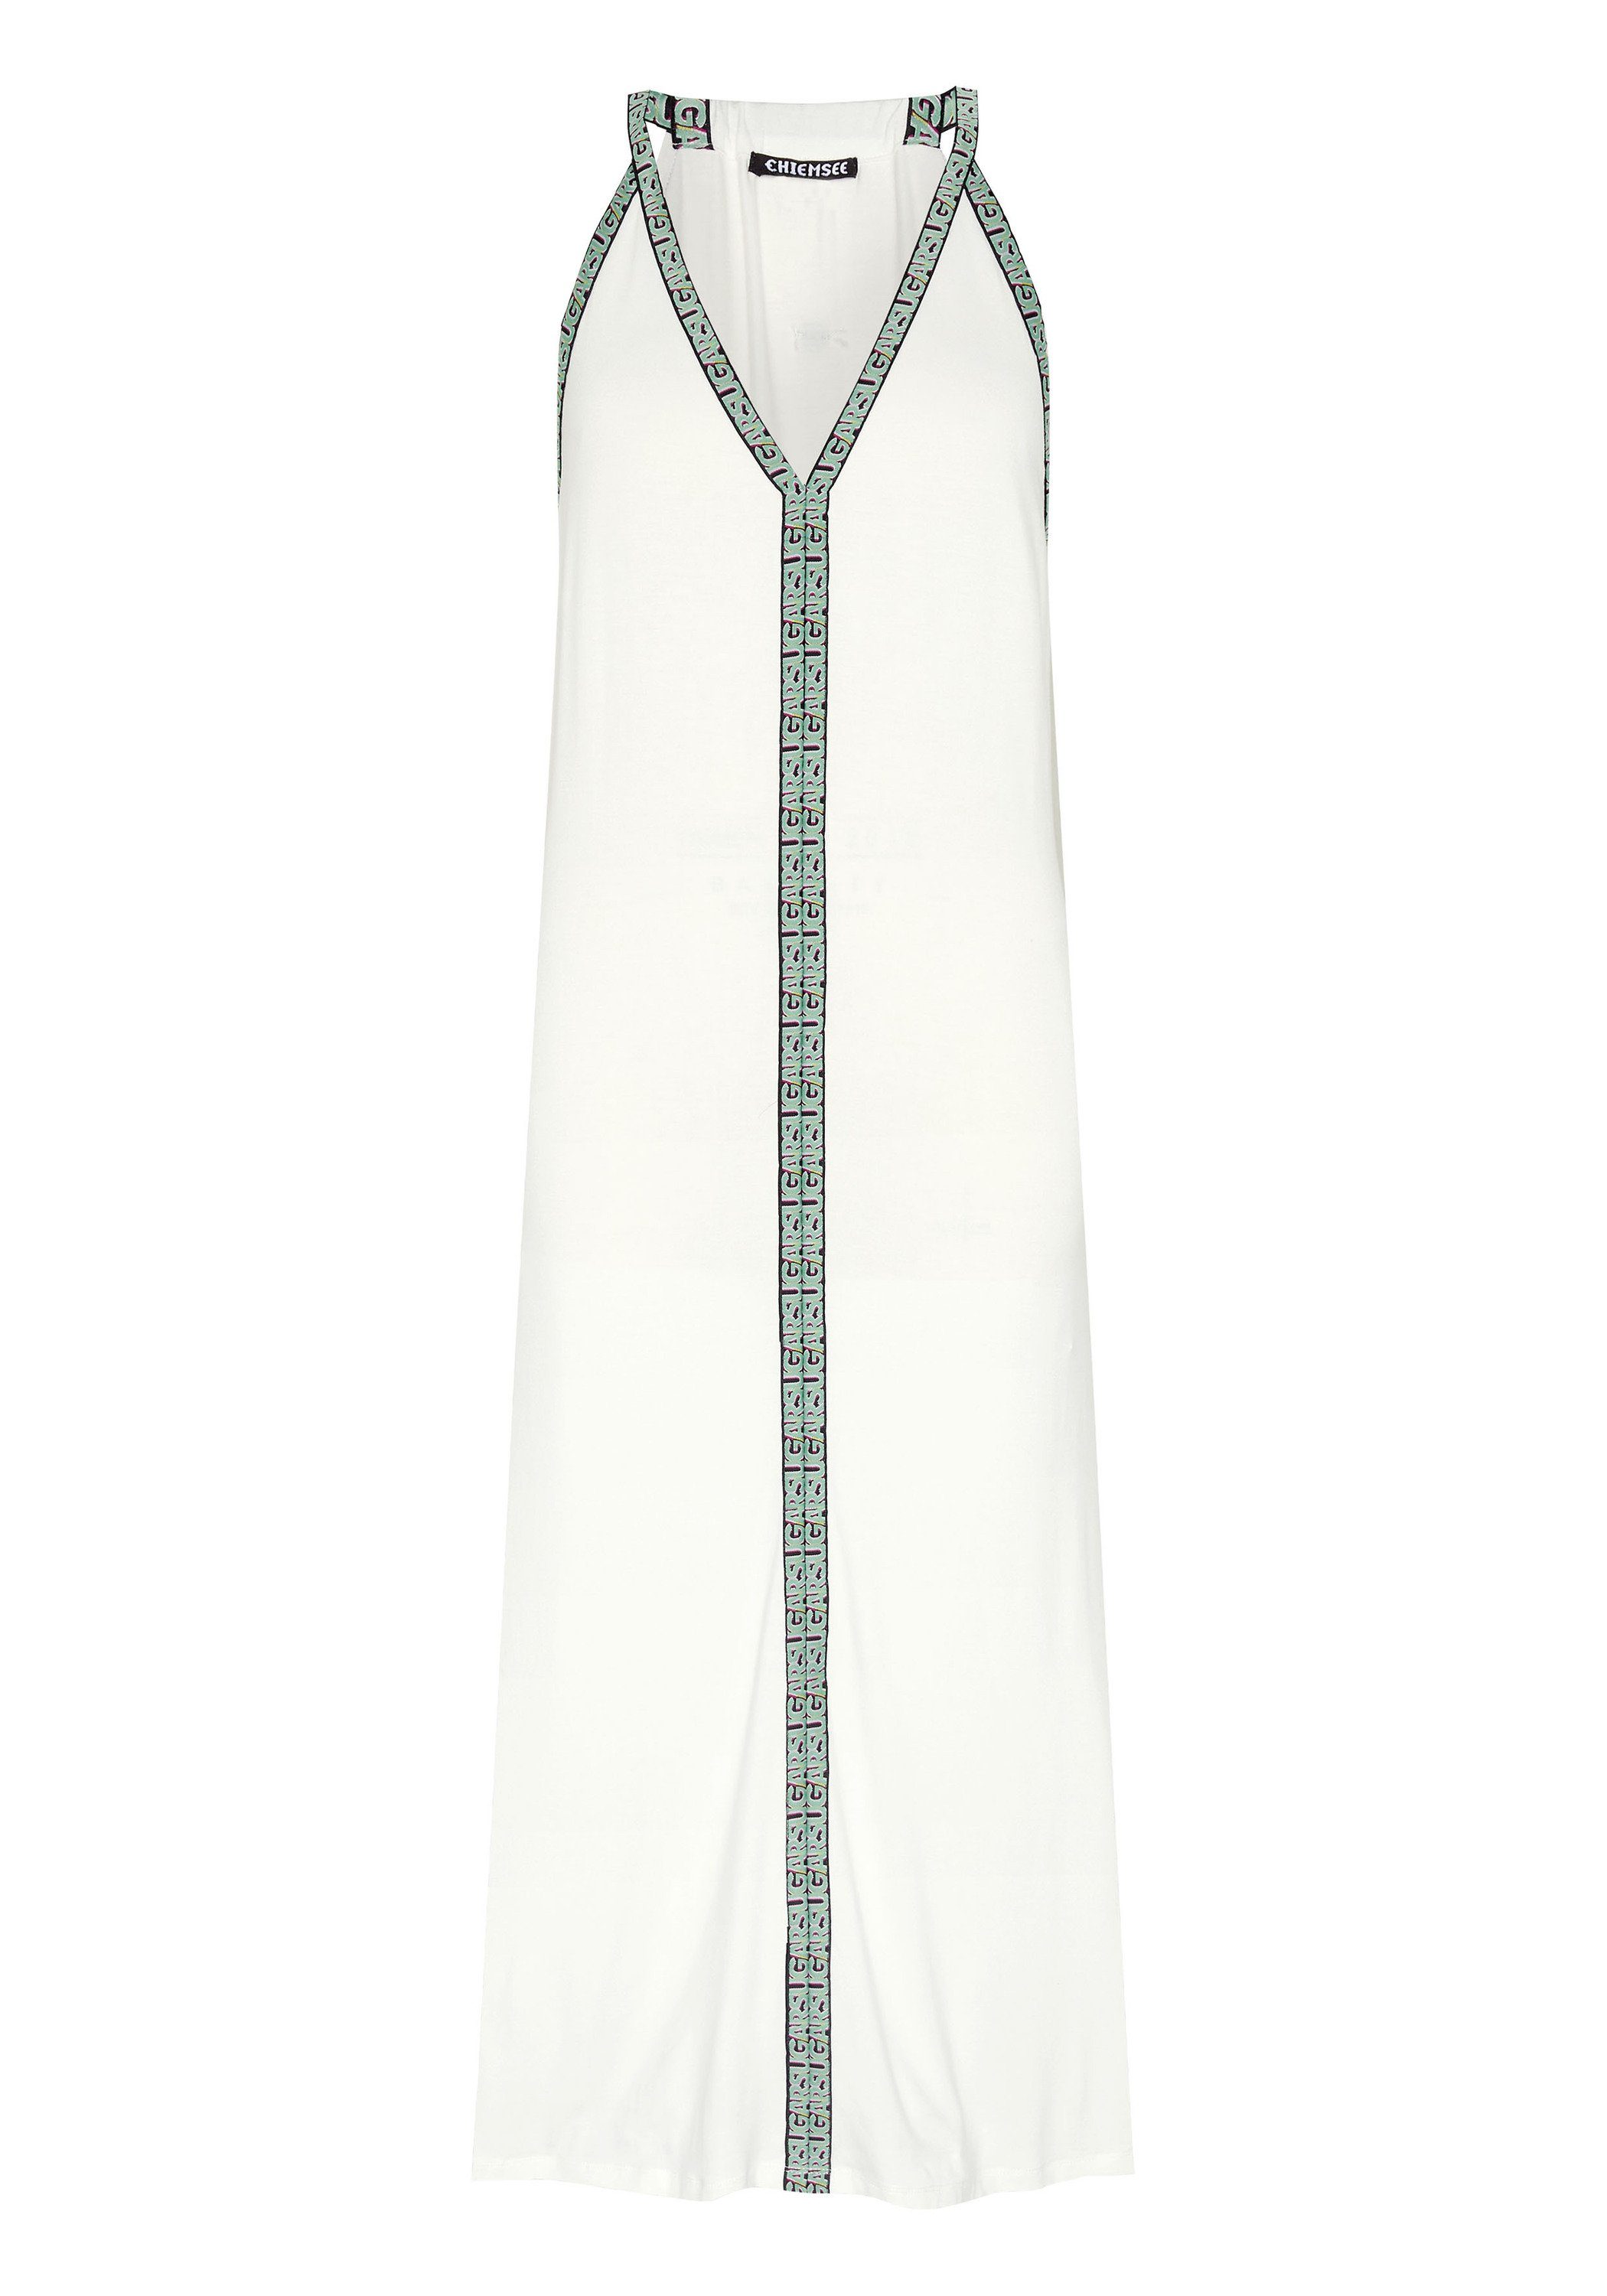 Chiemsee Maxikleid Kleid mit beschrifteten Streifen 1